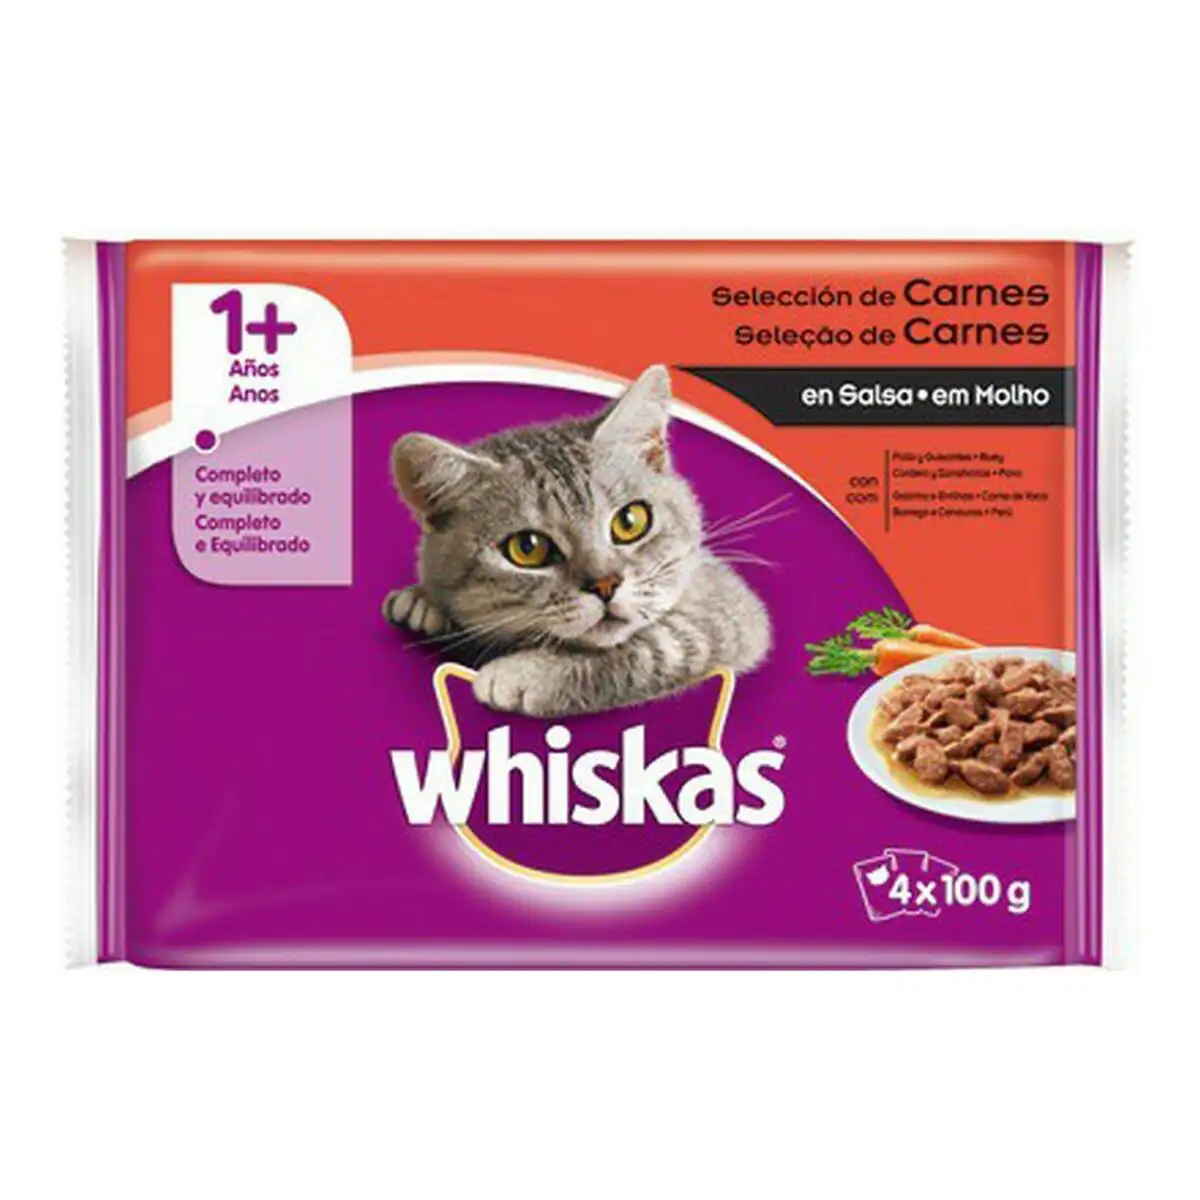 Aliments pour chat whiskas c 72245 4 x 100 g _5374. DIAYTAR SENEGAL - Votre Destinée Shopping Personnalisée. Plongez dans notre boutique en ligne et créez votre propre expérience de shopping en choisissant parmi nos produits variés.